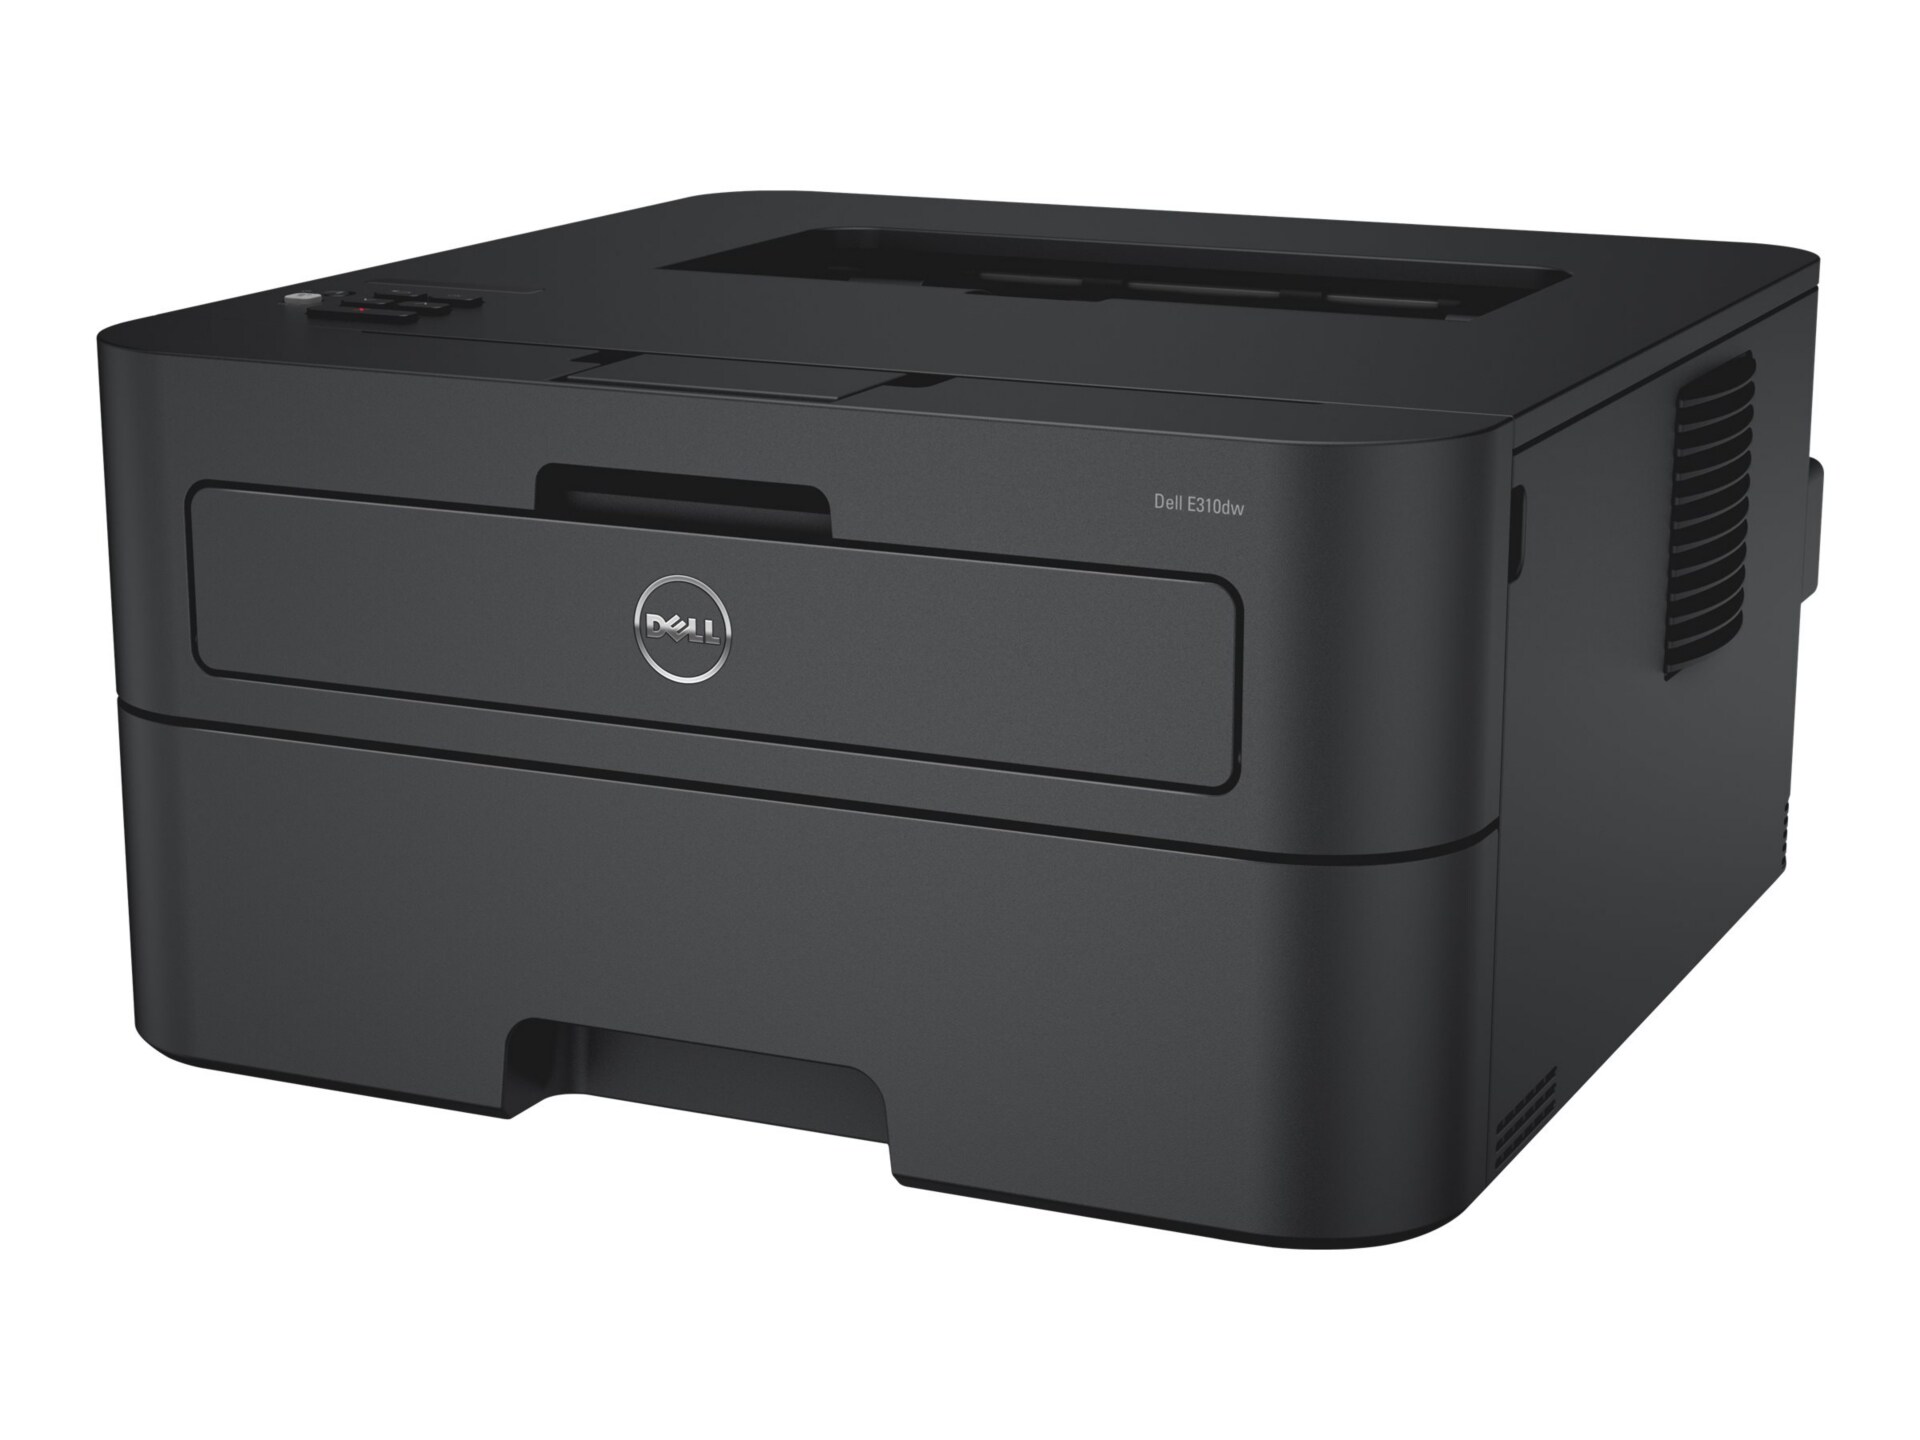 Dell E310dw - printer - monochrome - laser